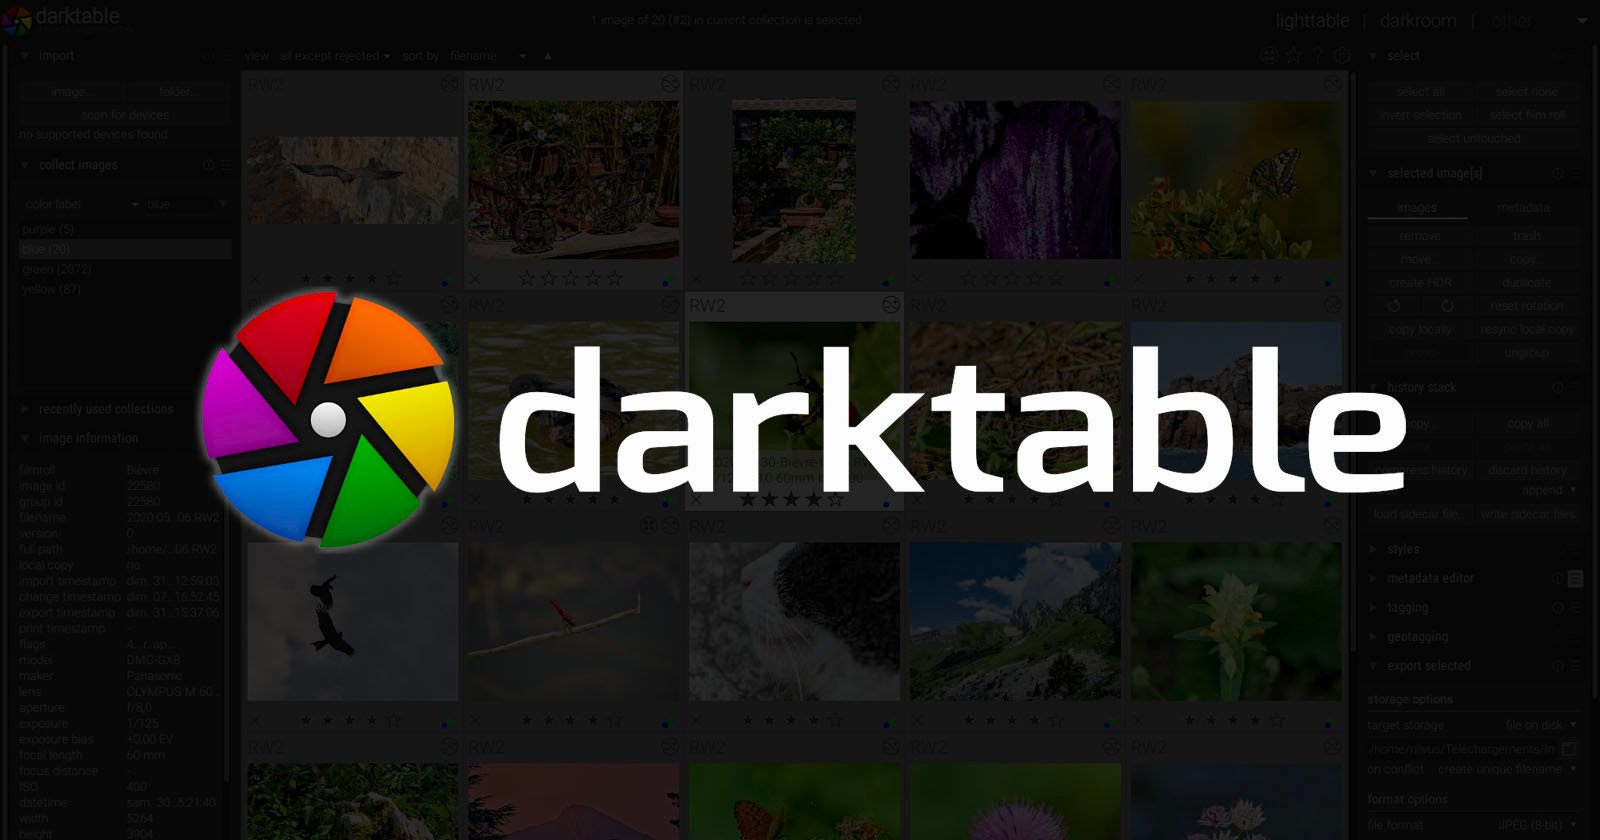  darktable major update open-source lightroom alternative 